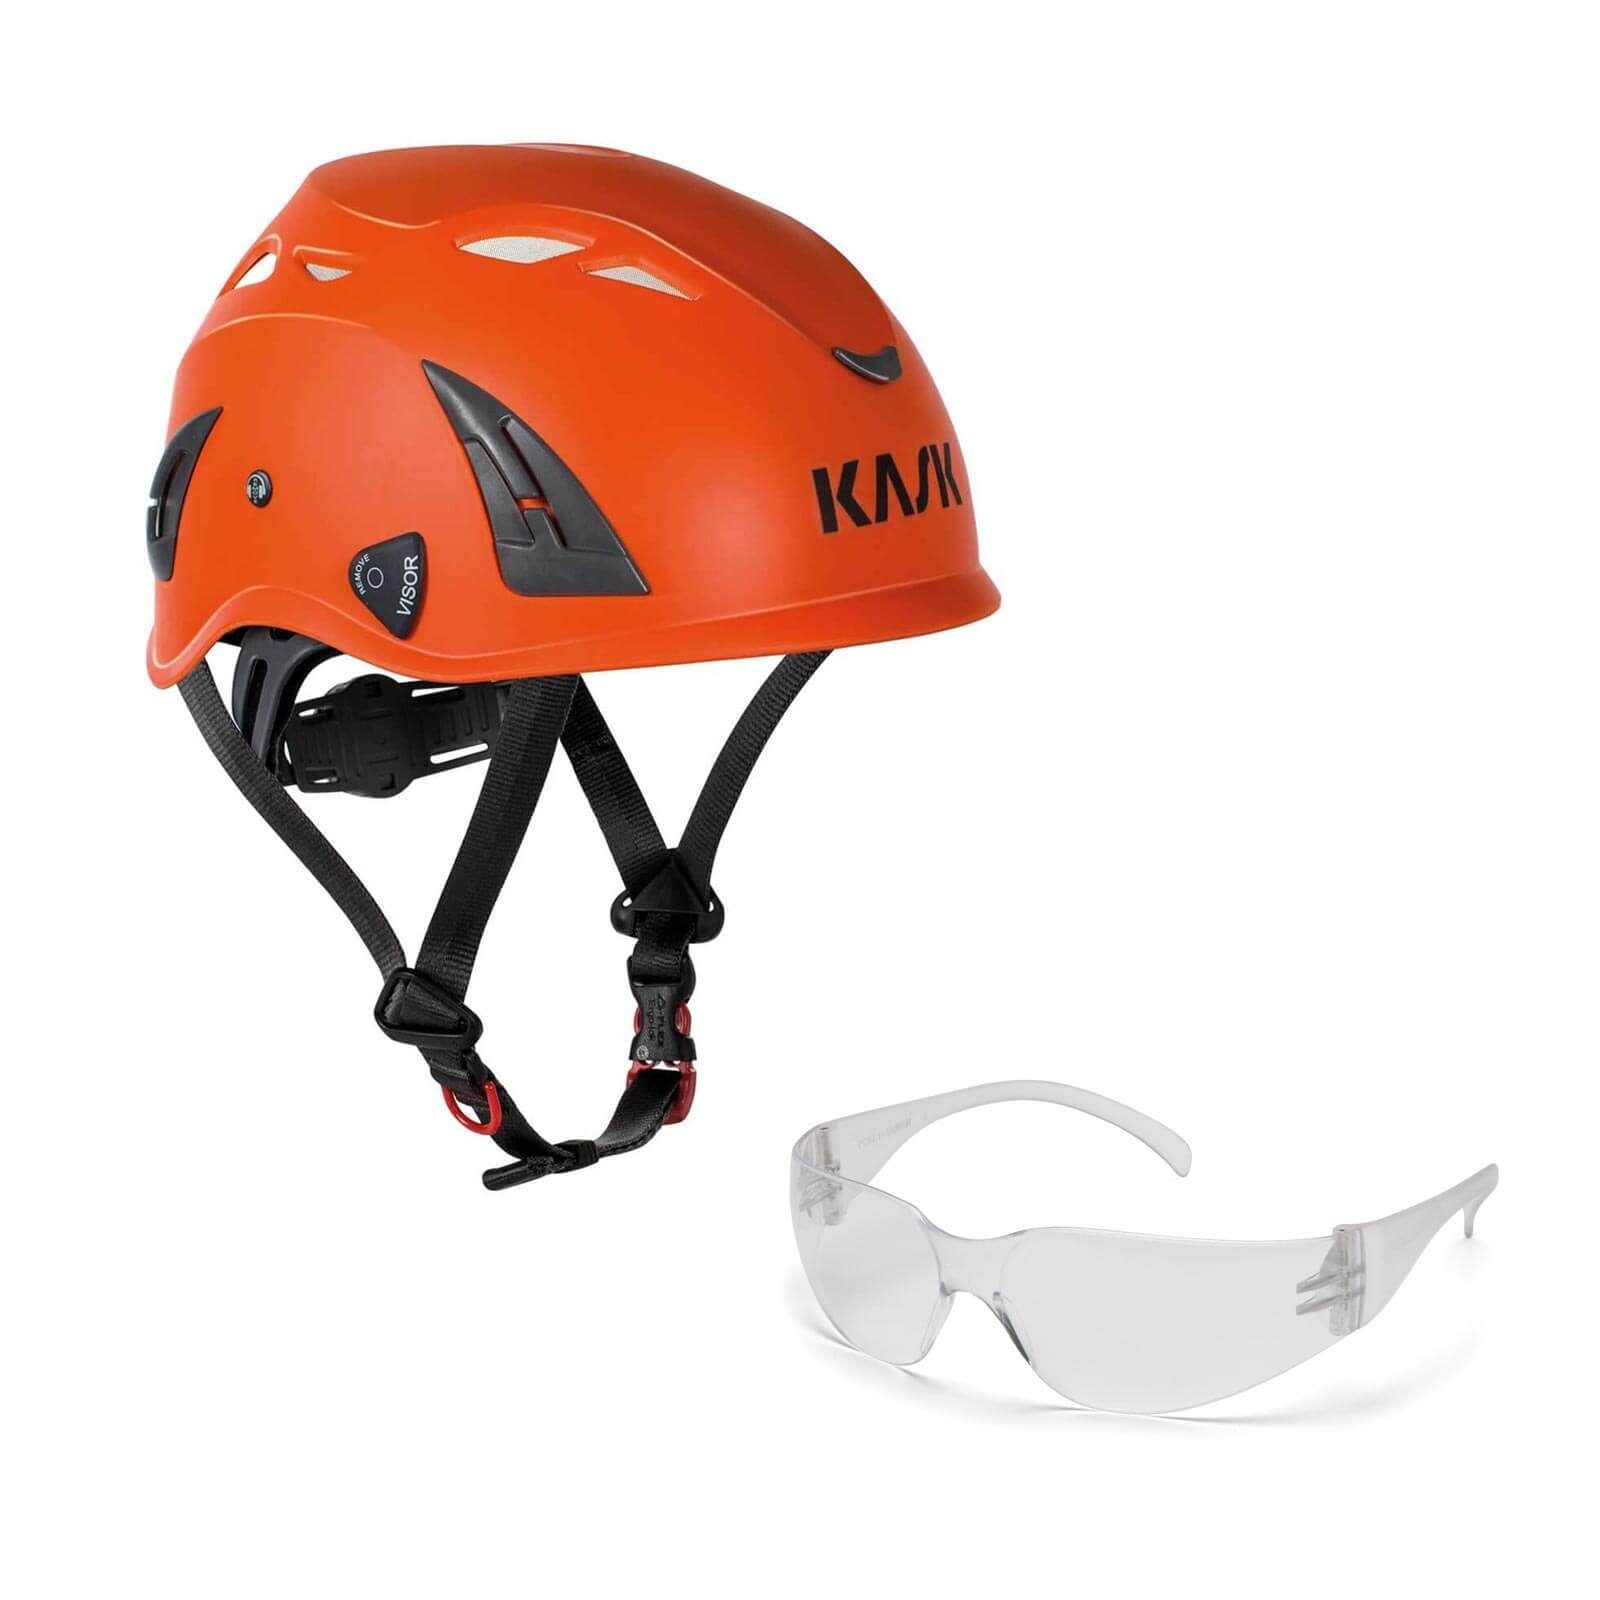 Kask Schutzhelm Bergsteigerhelm, Industriekletterhelm Plasma AQ + Schutzbrille klar orange